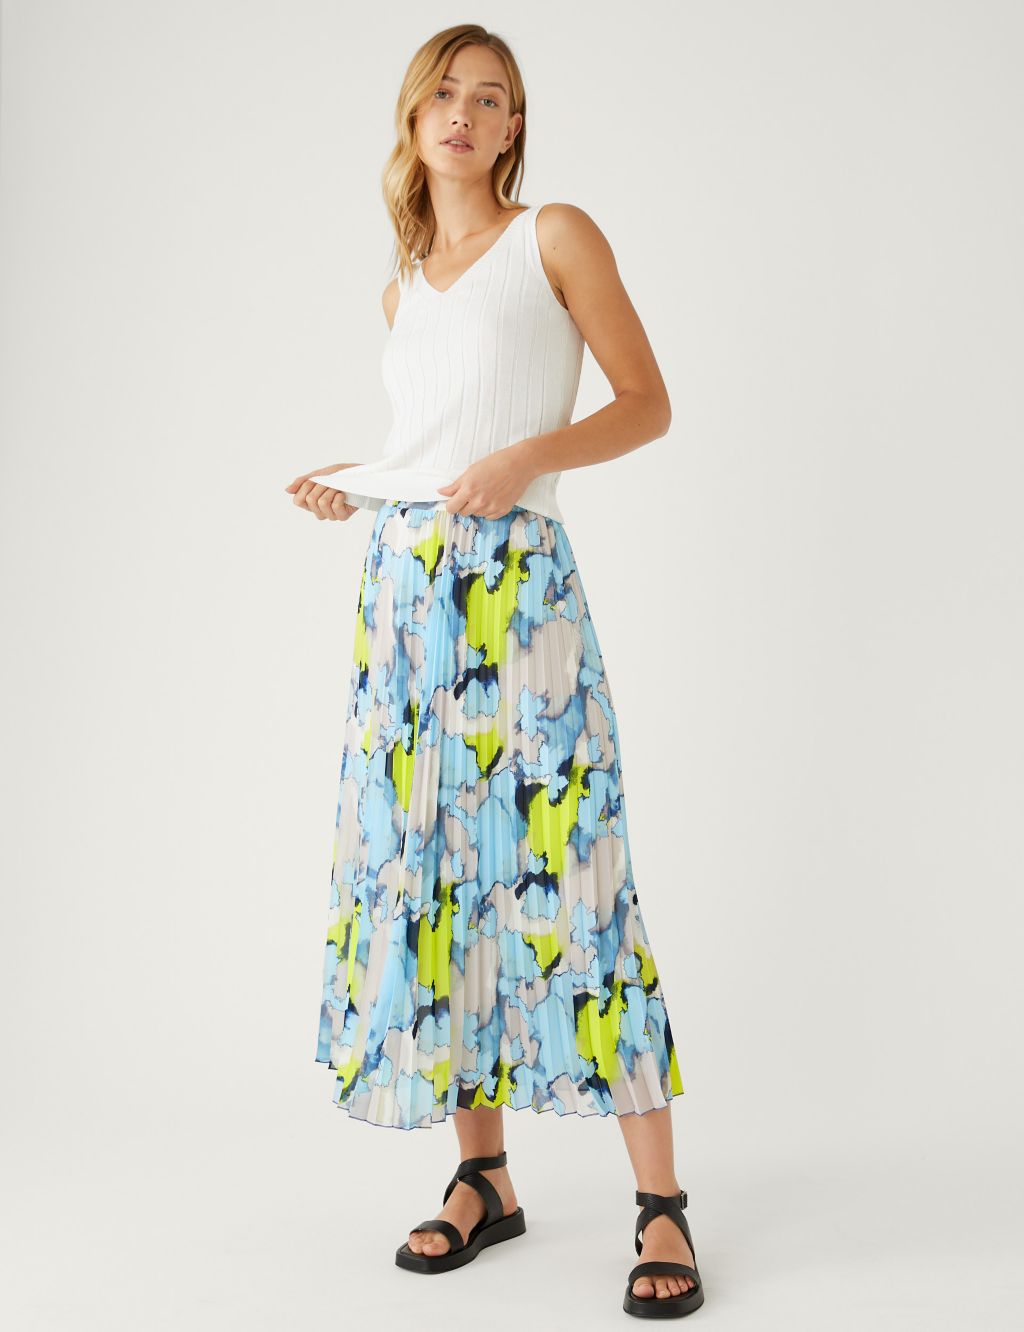 Printed Pleated Midaxi Skirt image 1